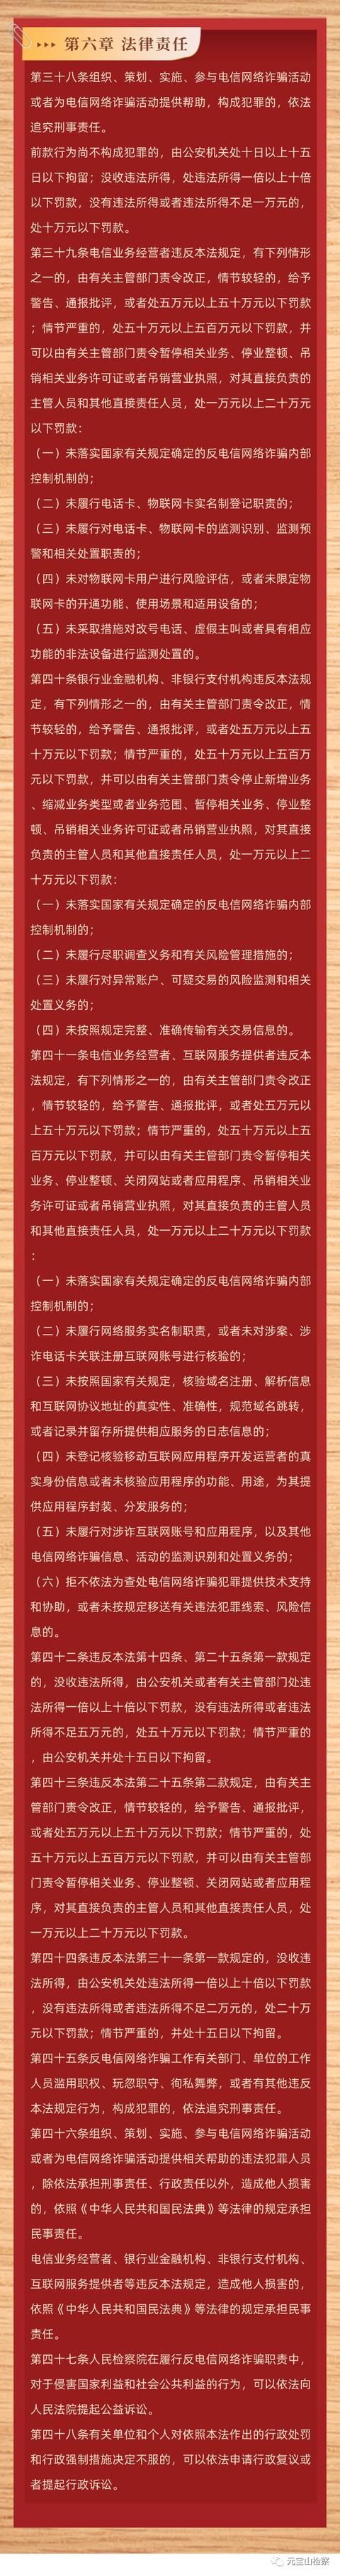 信用法规 |《中华人民共和国反电信网络诈骗法》